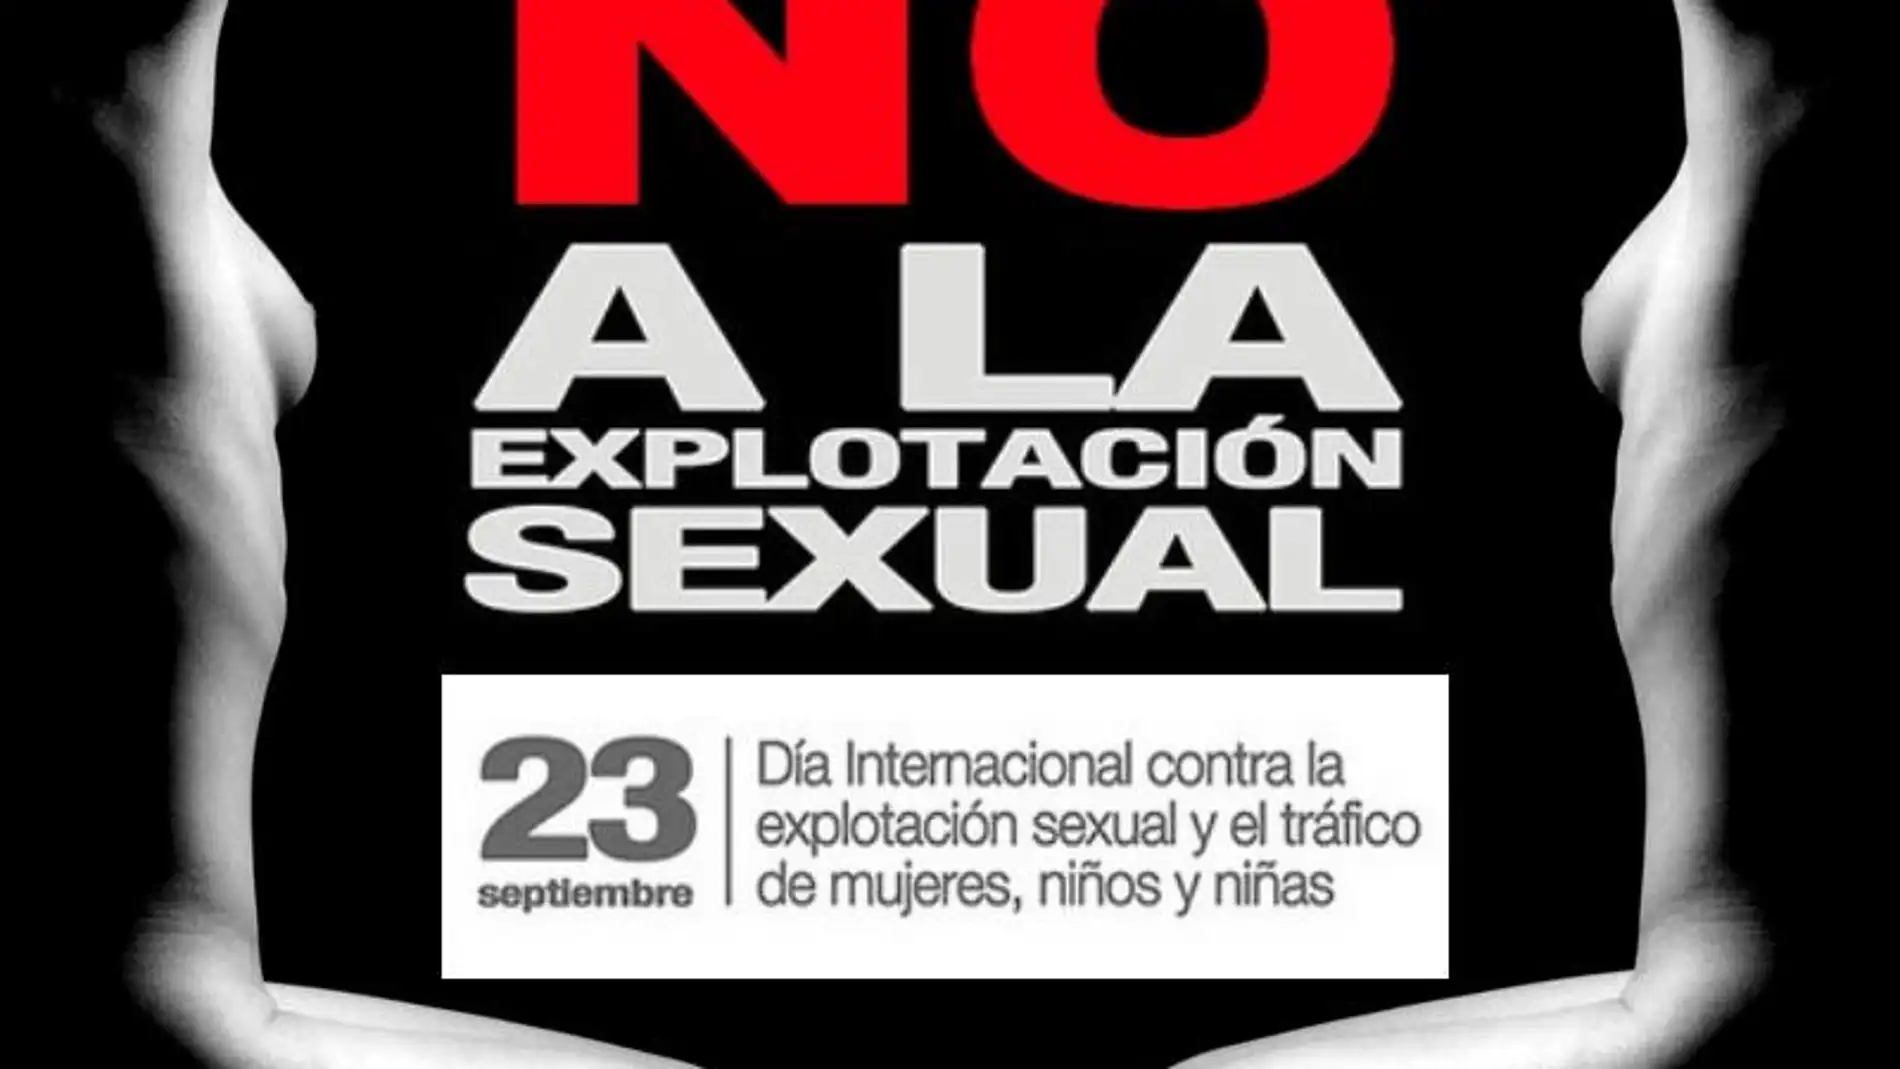 O concello de Ourense sumase os actos no dia contra a explotacion sexual